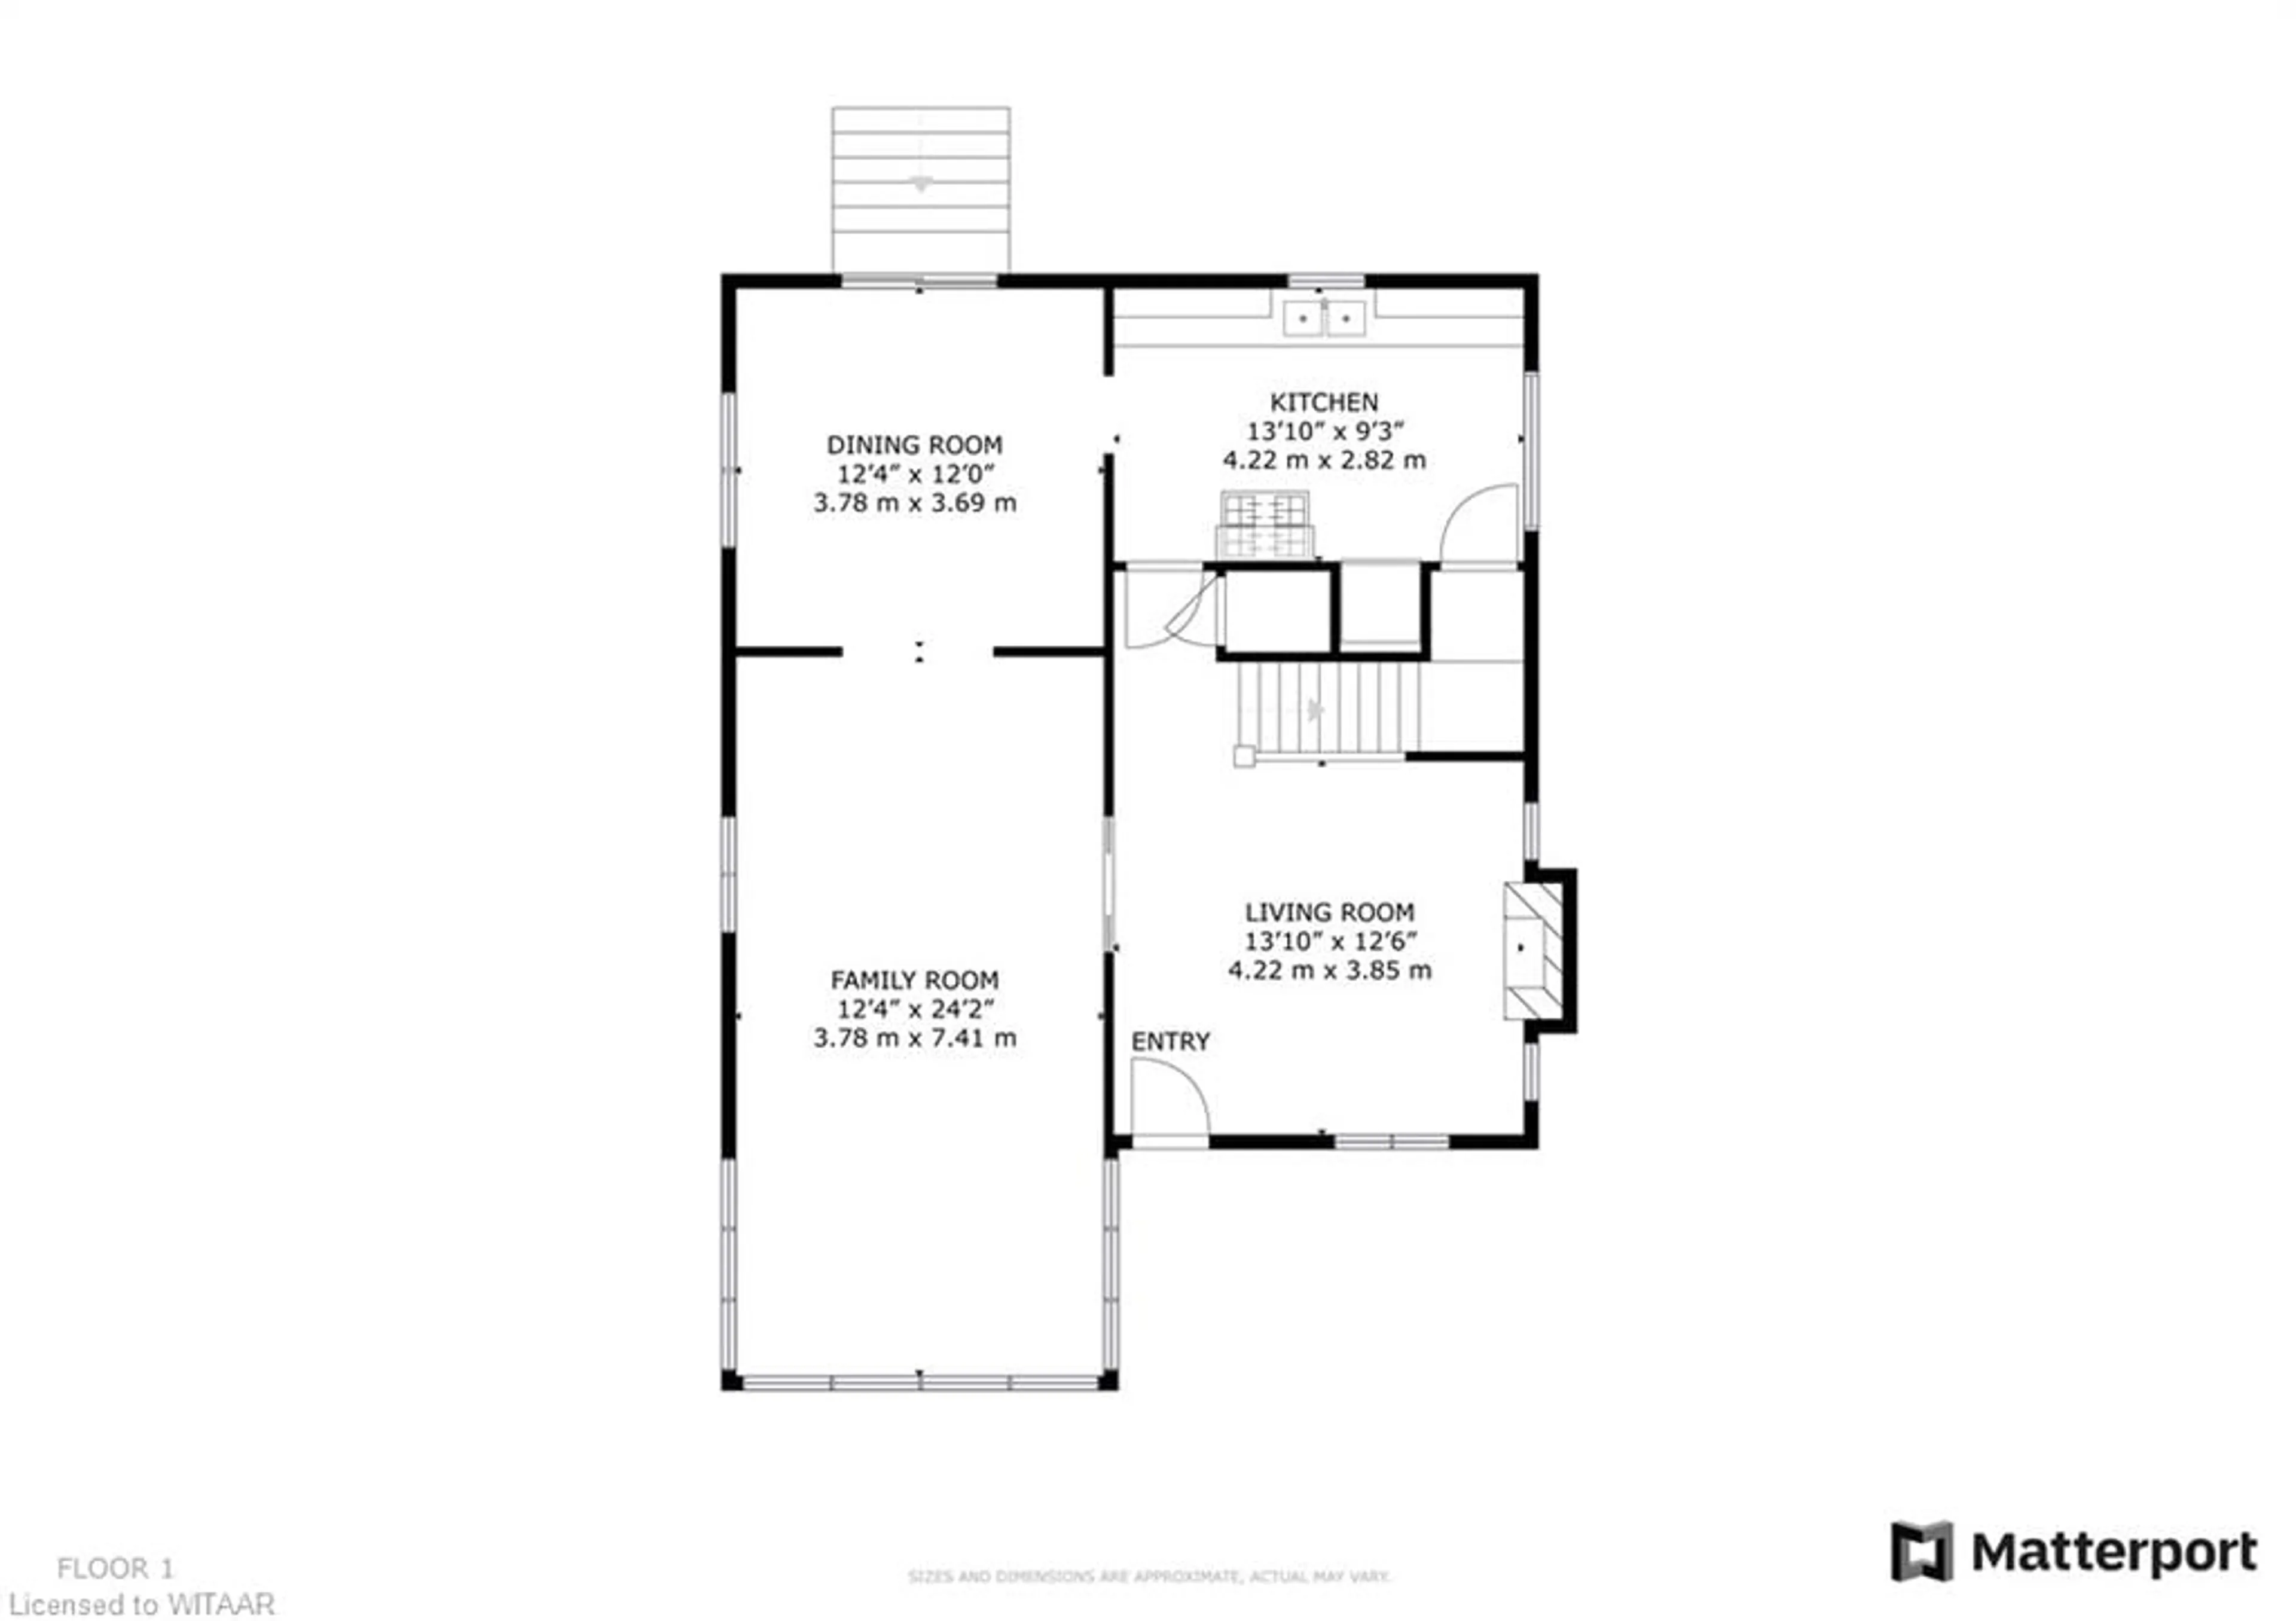 Floor plan for 513 King St, Woodstock Ontario N4S 1M7